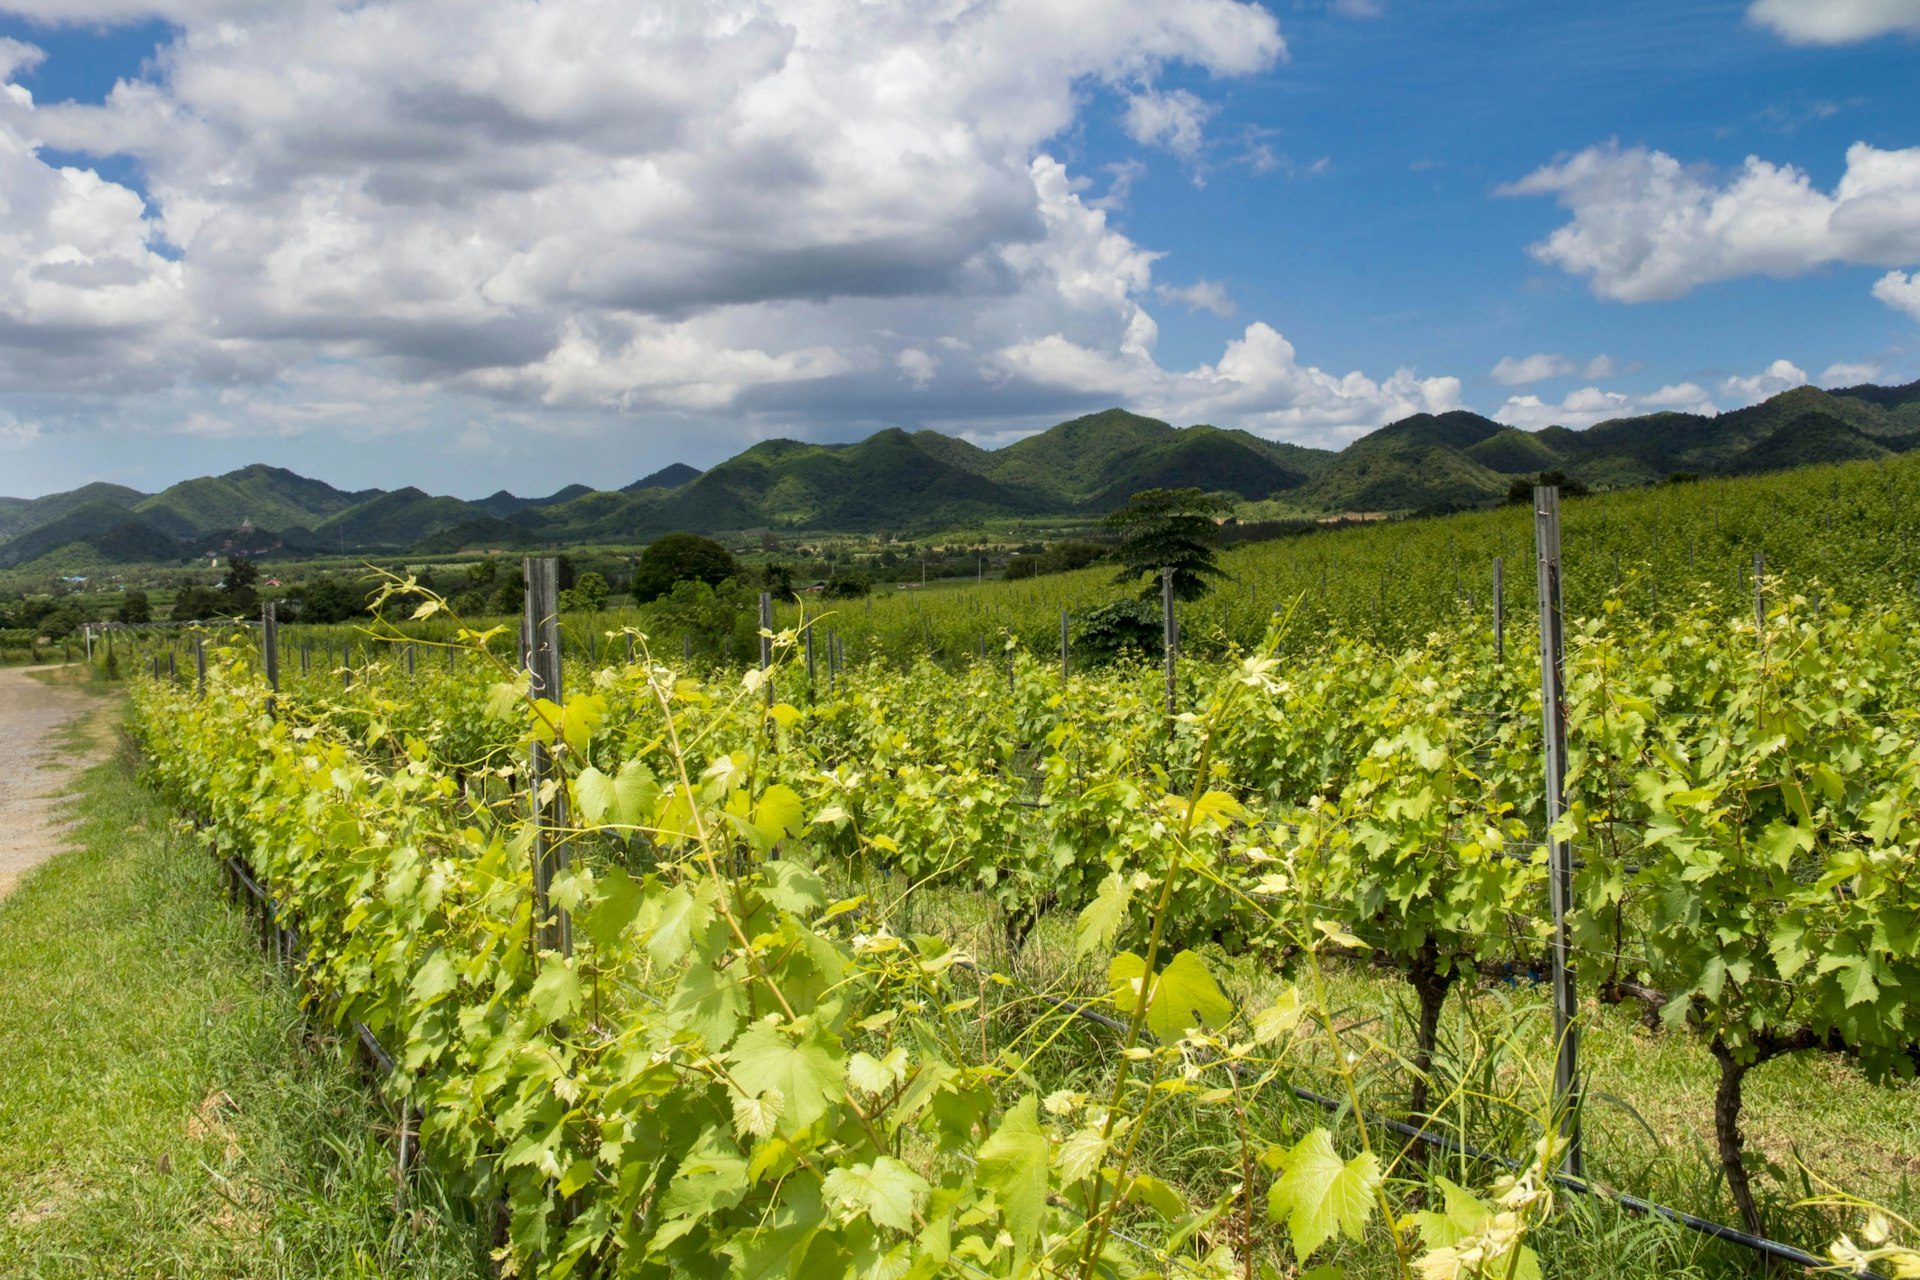 Features - Vines growing at the Hua Hin Hills Vineyard , Hua Hin, Thailand